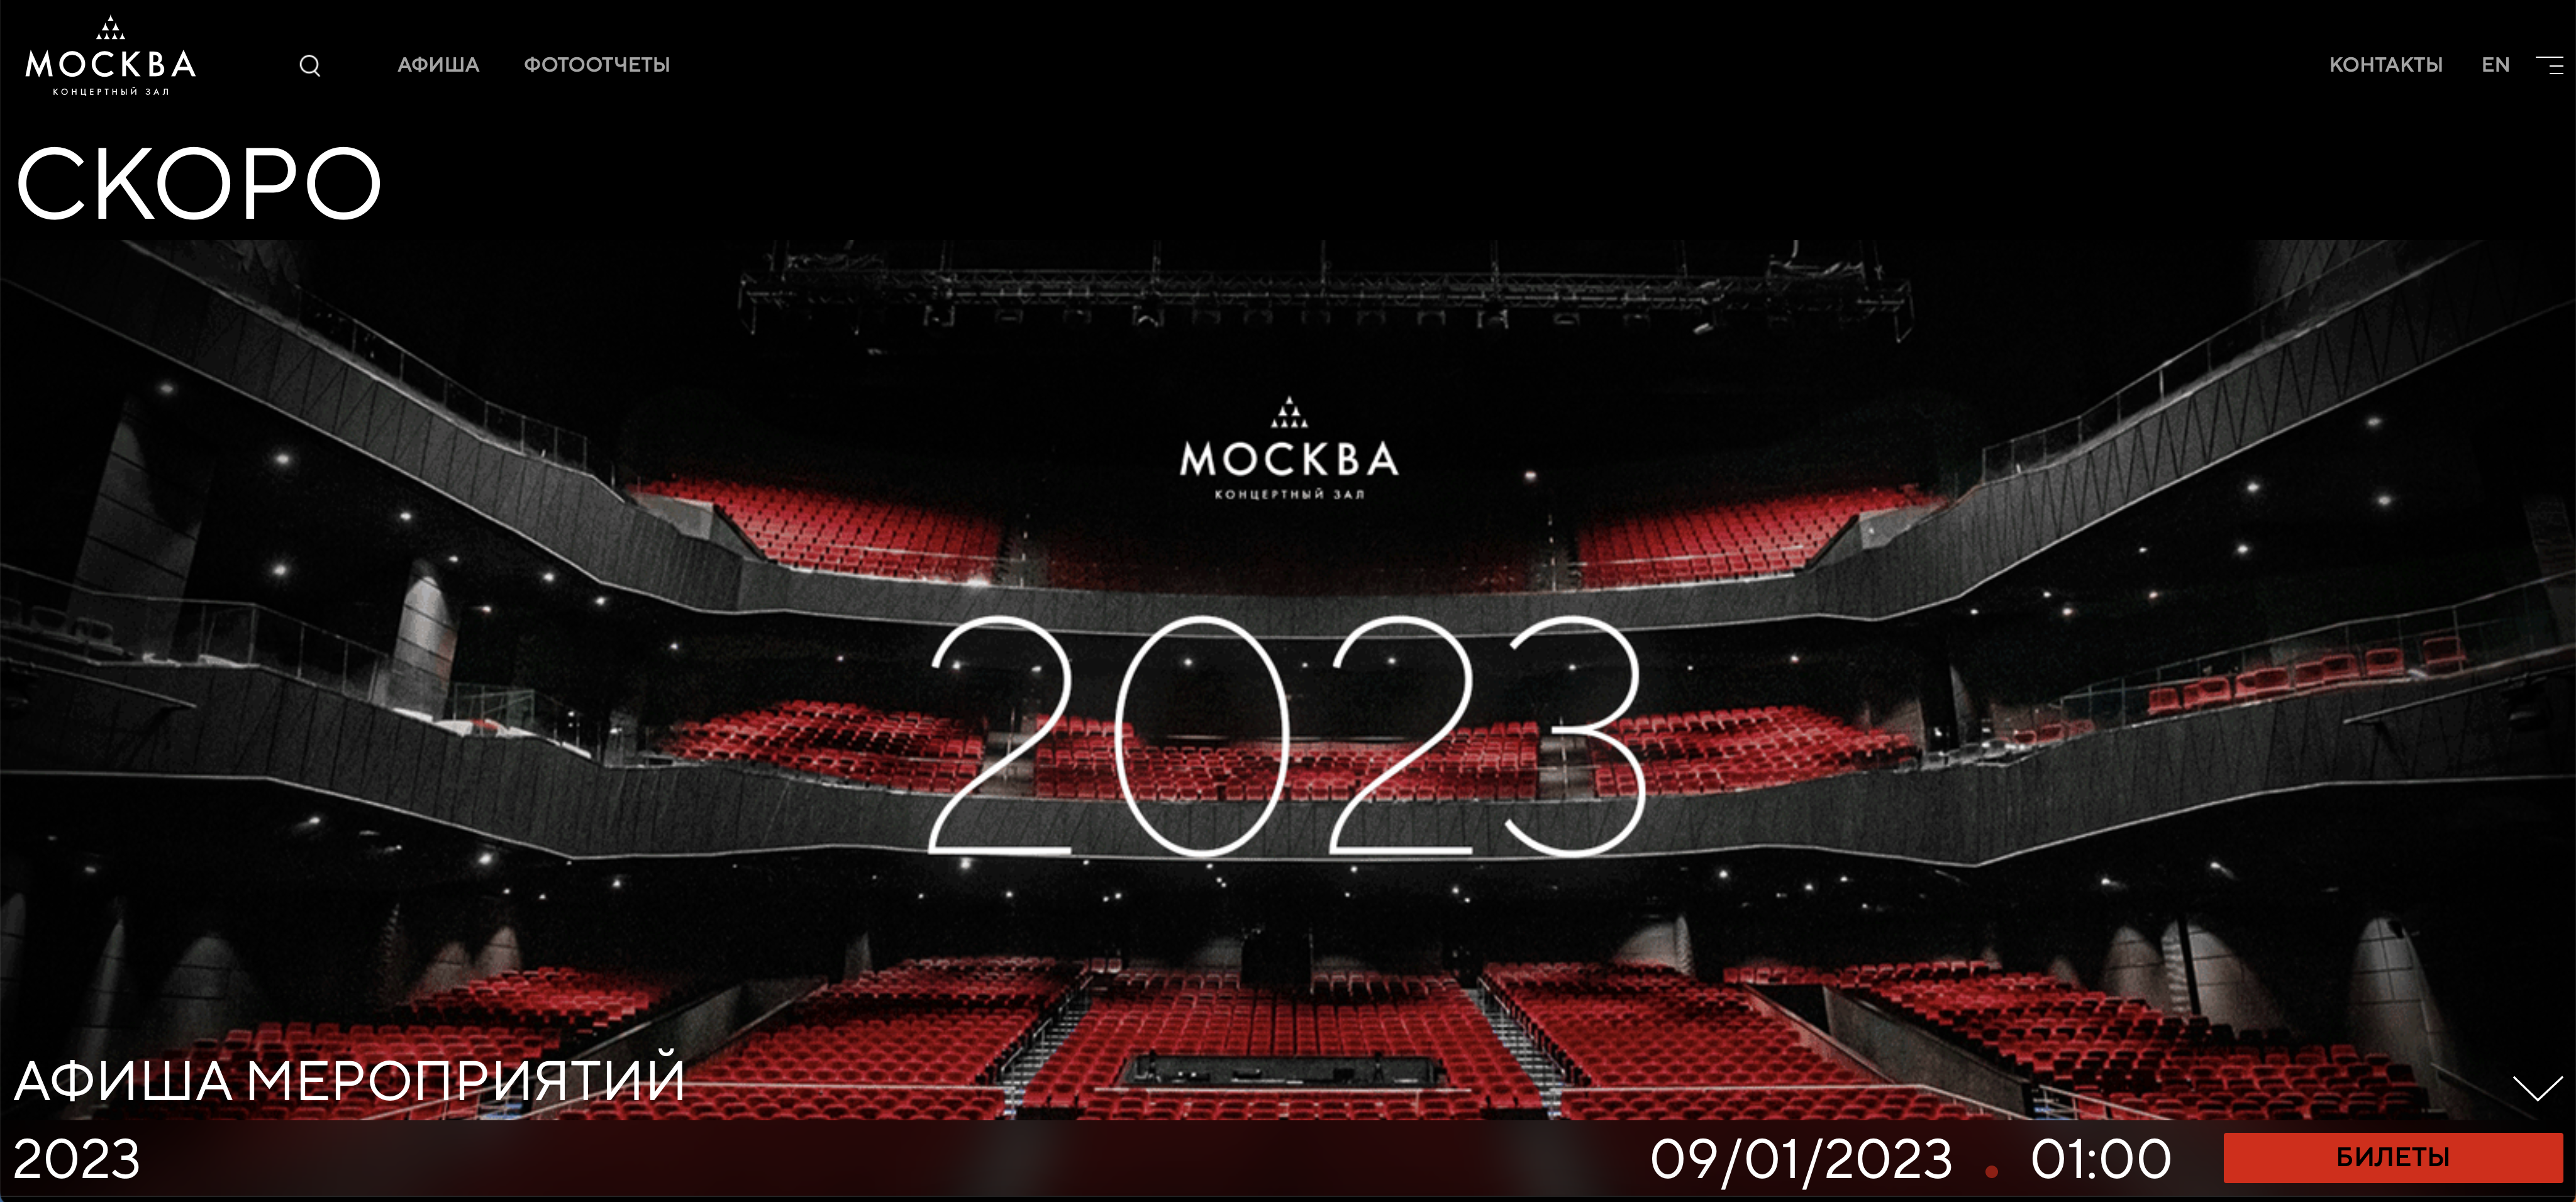 Концертный зал «Москва»